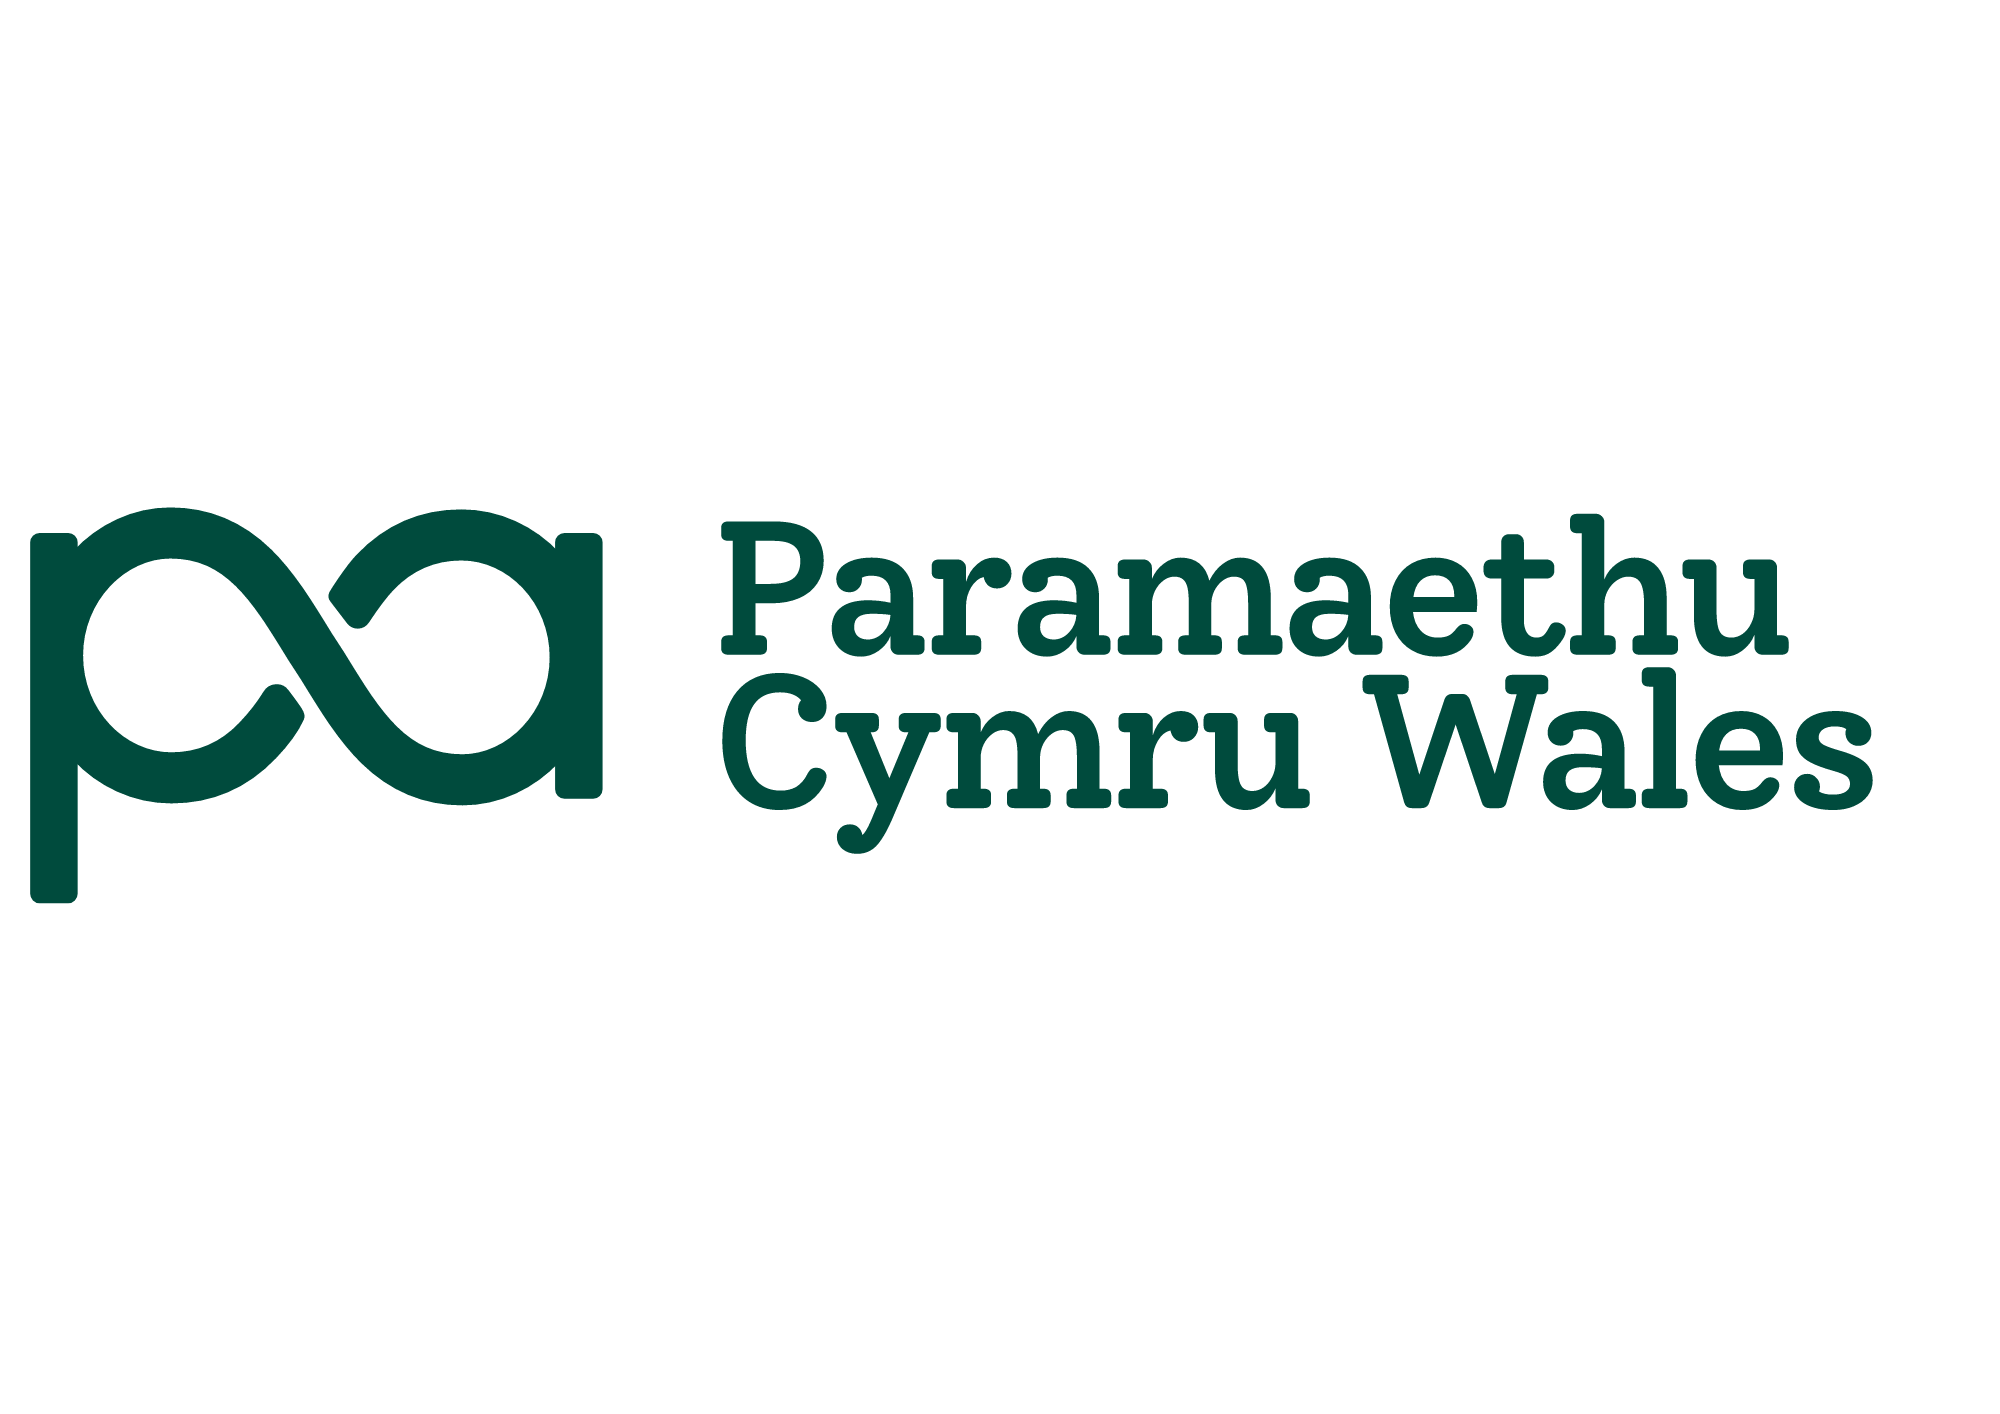 Paramaethu Cymru Permaculture Association Wales logo